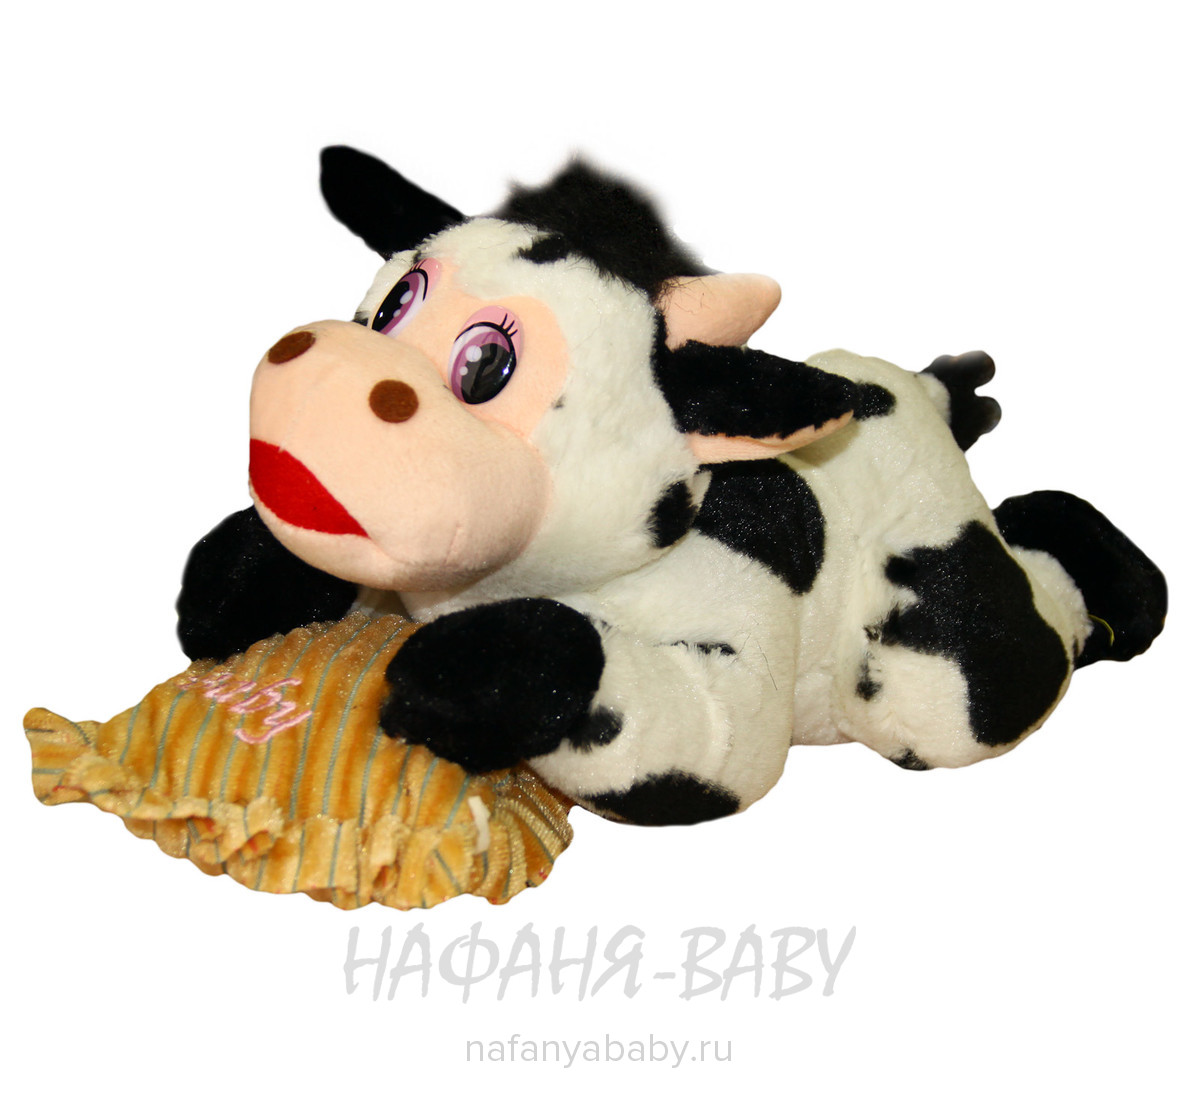 Мягкая игрушка Бычок TOY TRADE BV, купить в интернет магазине Нафаня. арт: 6475.